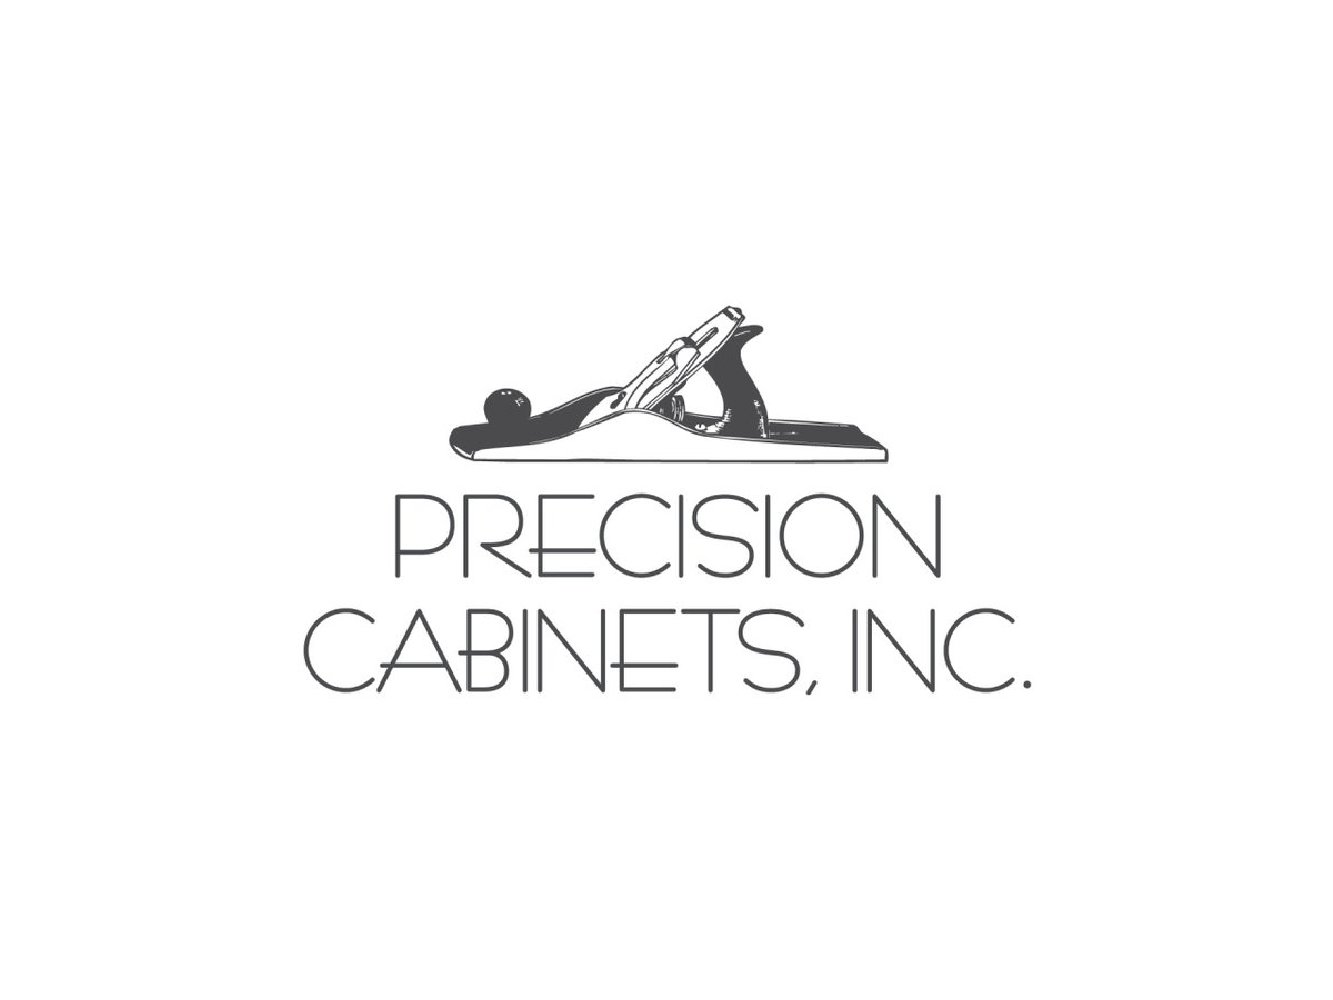 Precision Cabinets